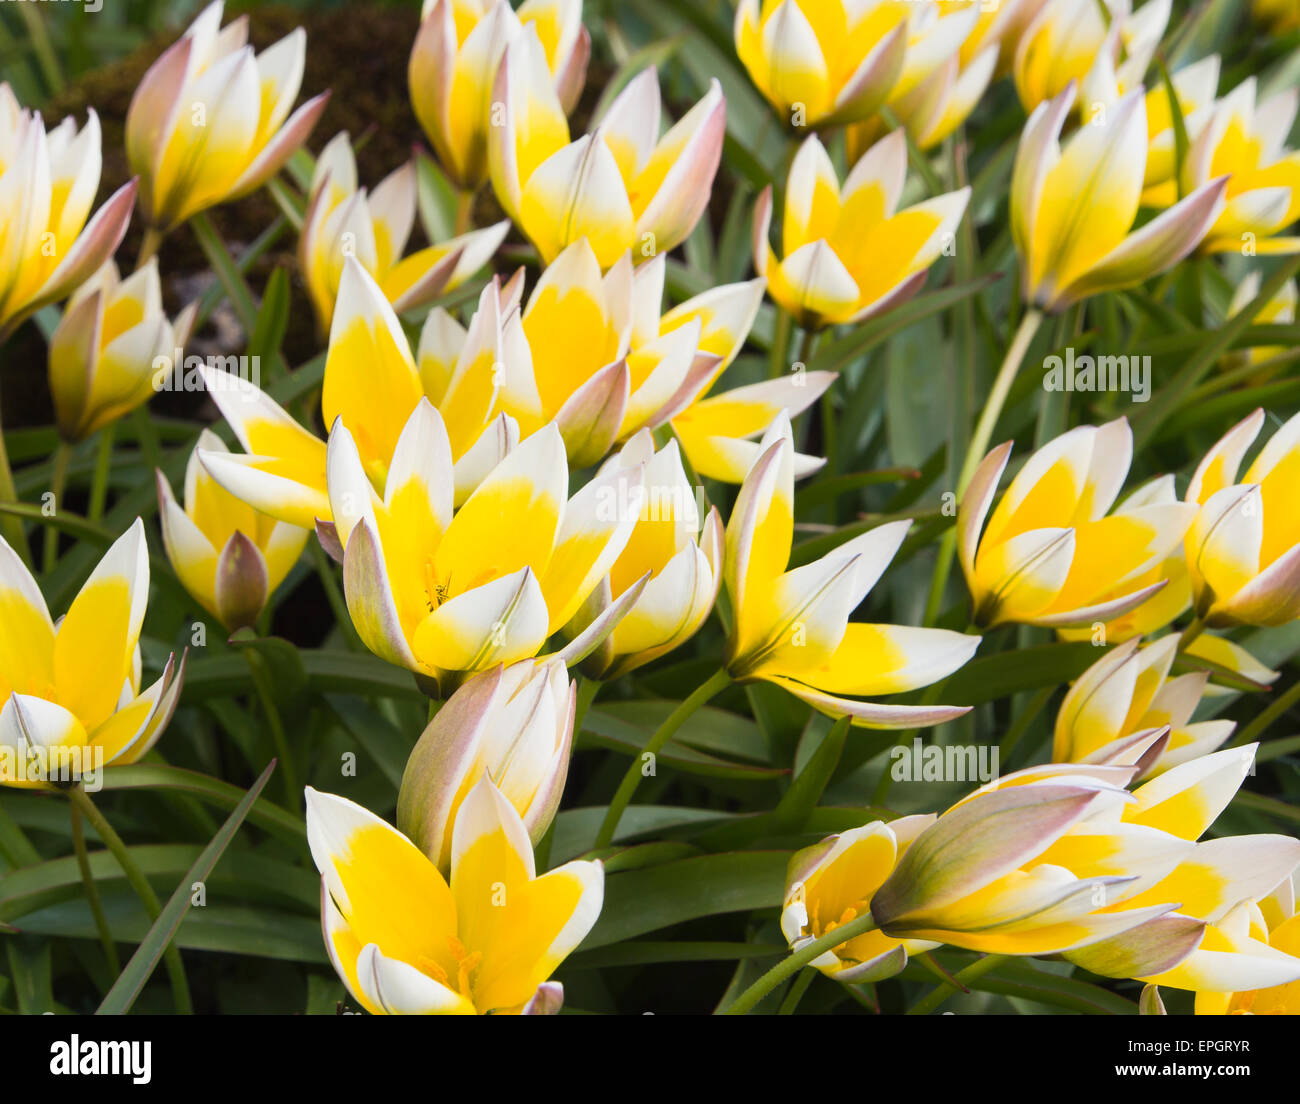 Tulipa Tarda oder späte Tulpe, gelb und weiß mit Spitzen Blütenblättern wächst bereitwillig im Botanischen Garten Universität, Oslo Norwegen Stockfoto